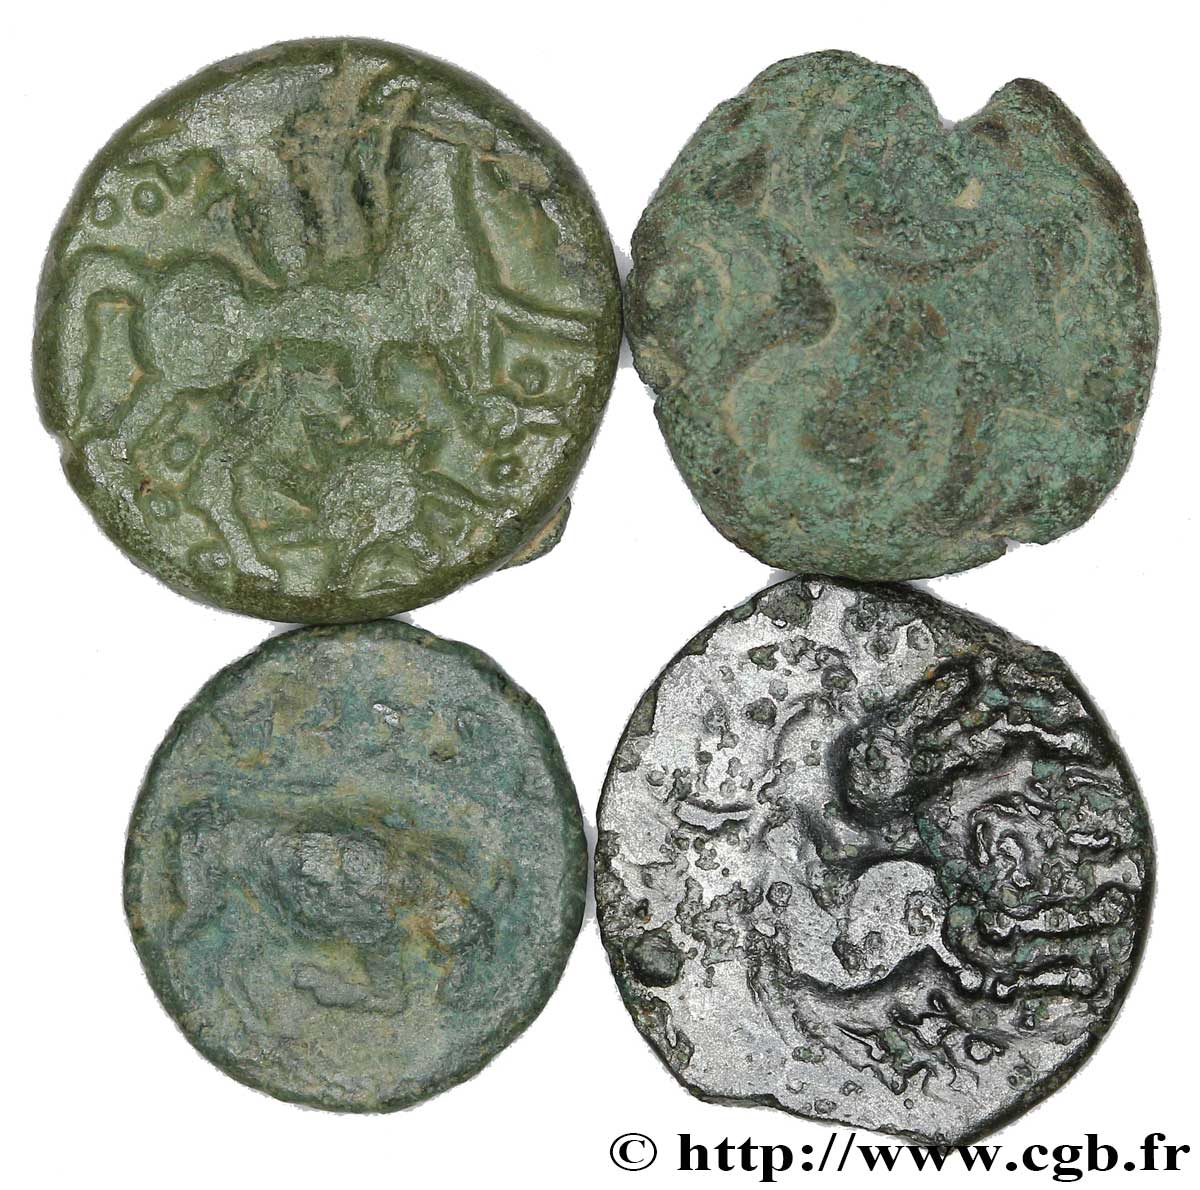 Gallia Lot de 4 bronzes variés lotto